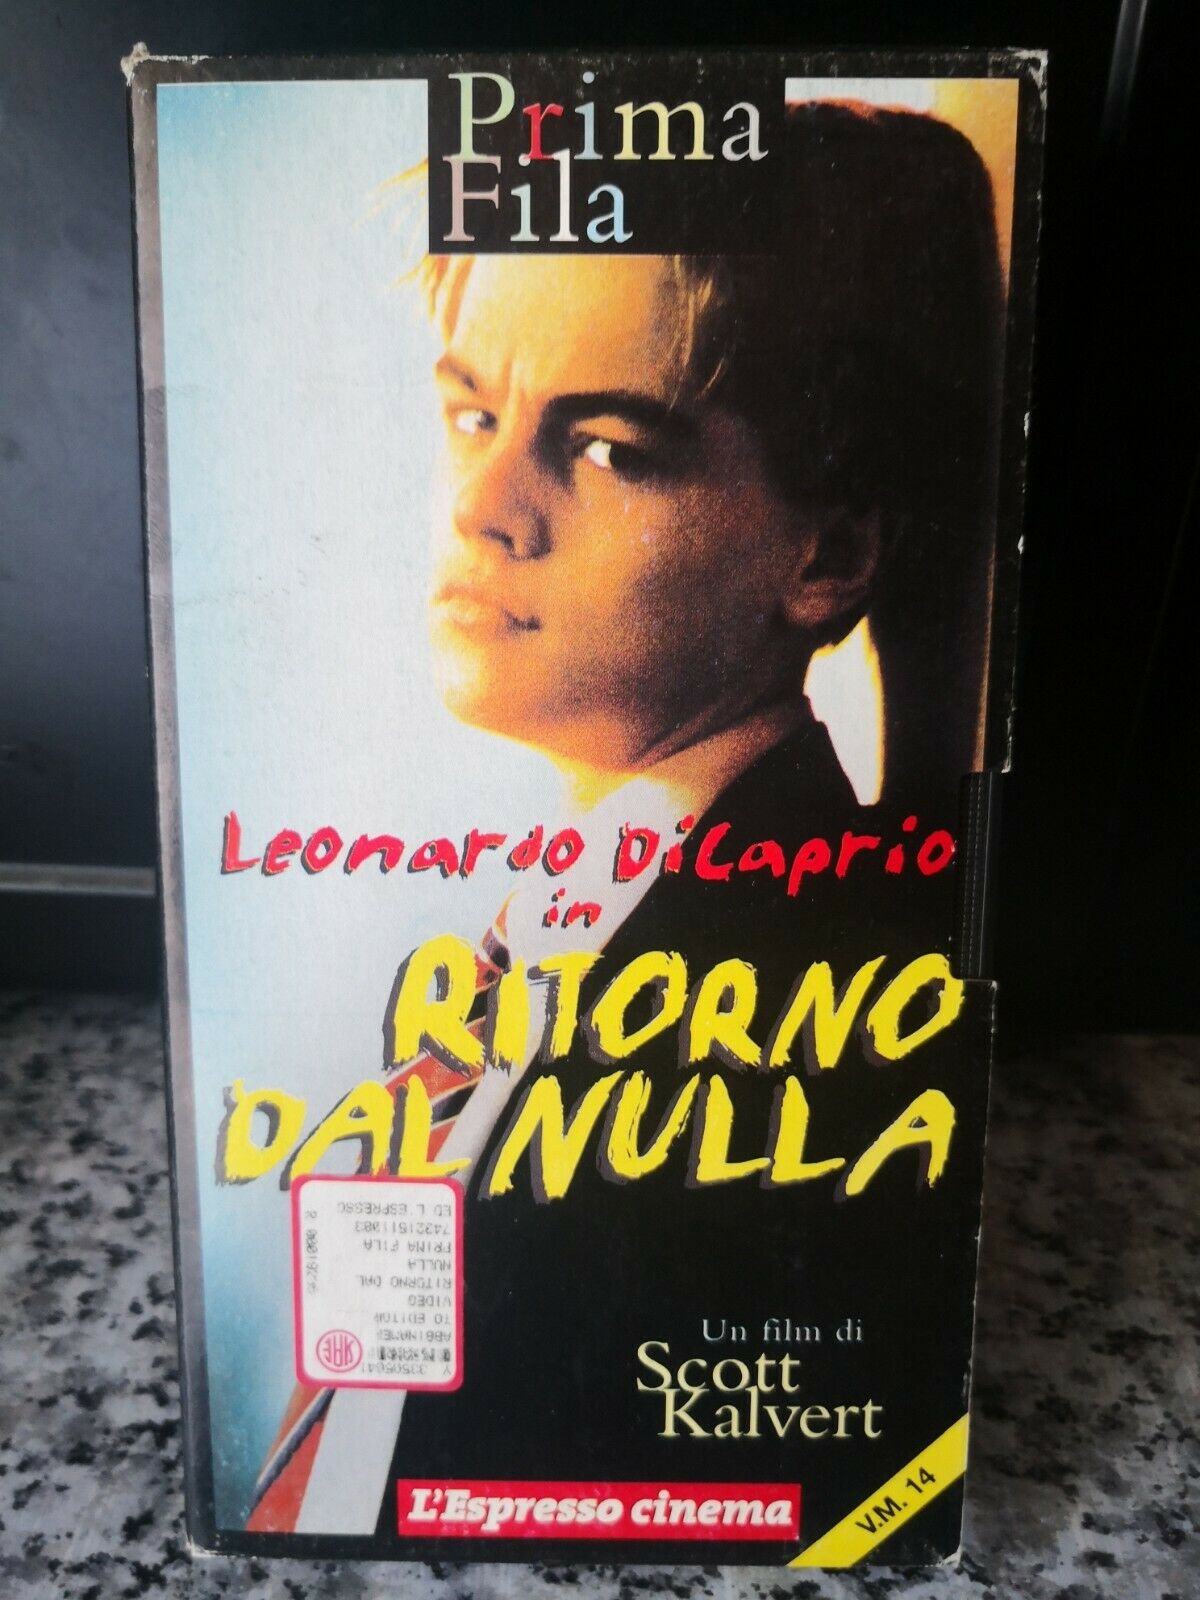 Leonardo di Caprio ritorno dal nulla - vhs -1995 - L'espresso cinema -F vhs usato